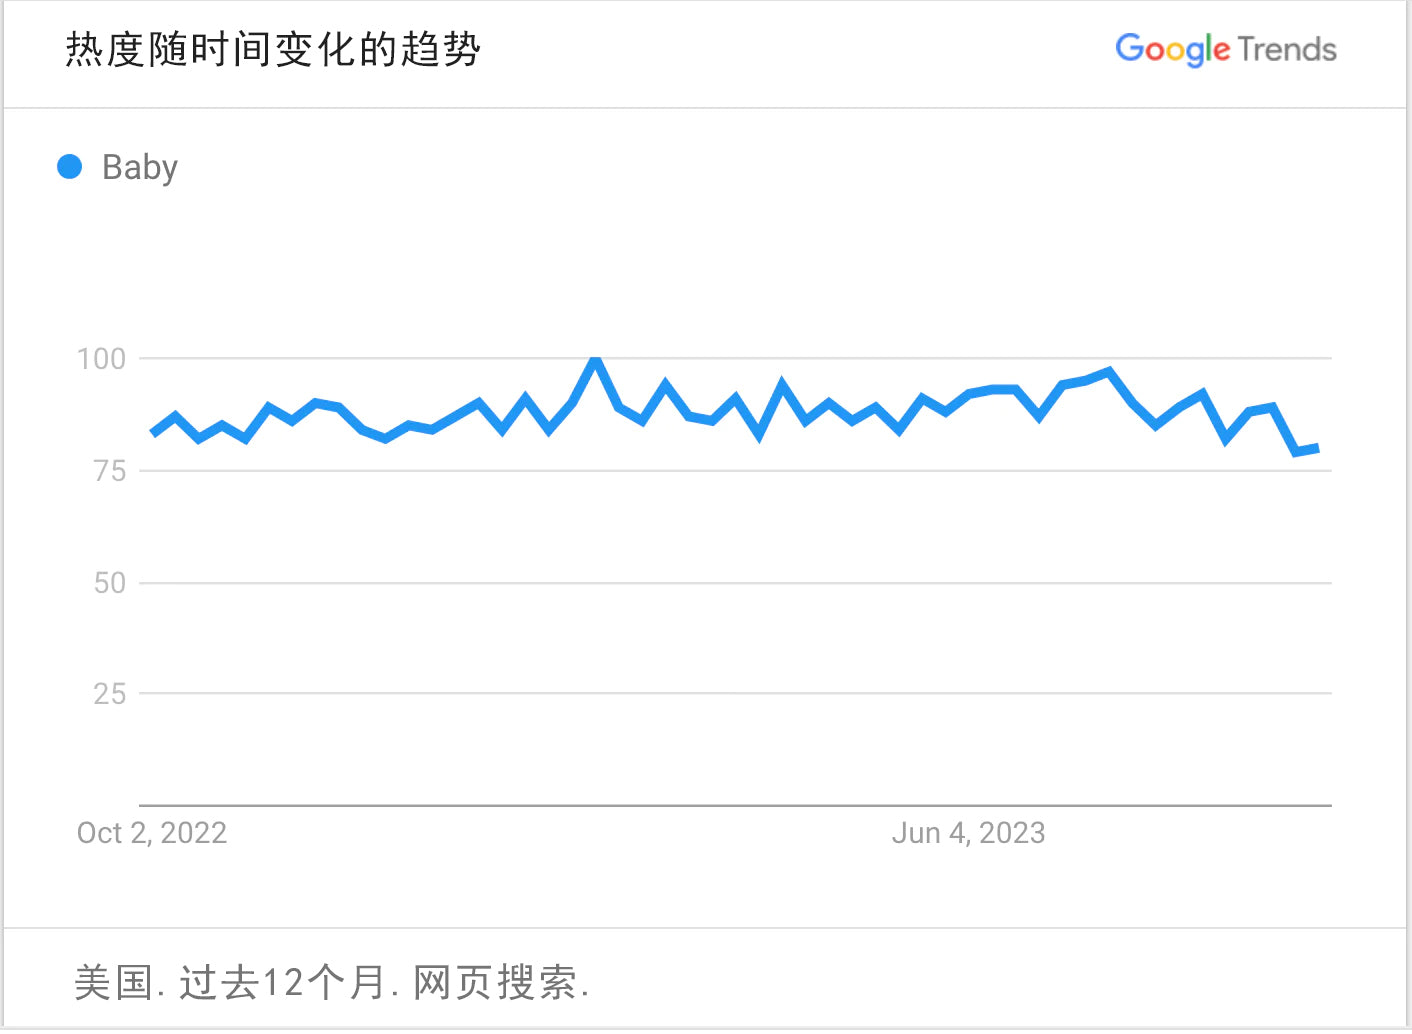 谷歌趋势图表曲线显示婴儿用品的搜索热度